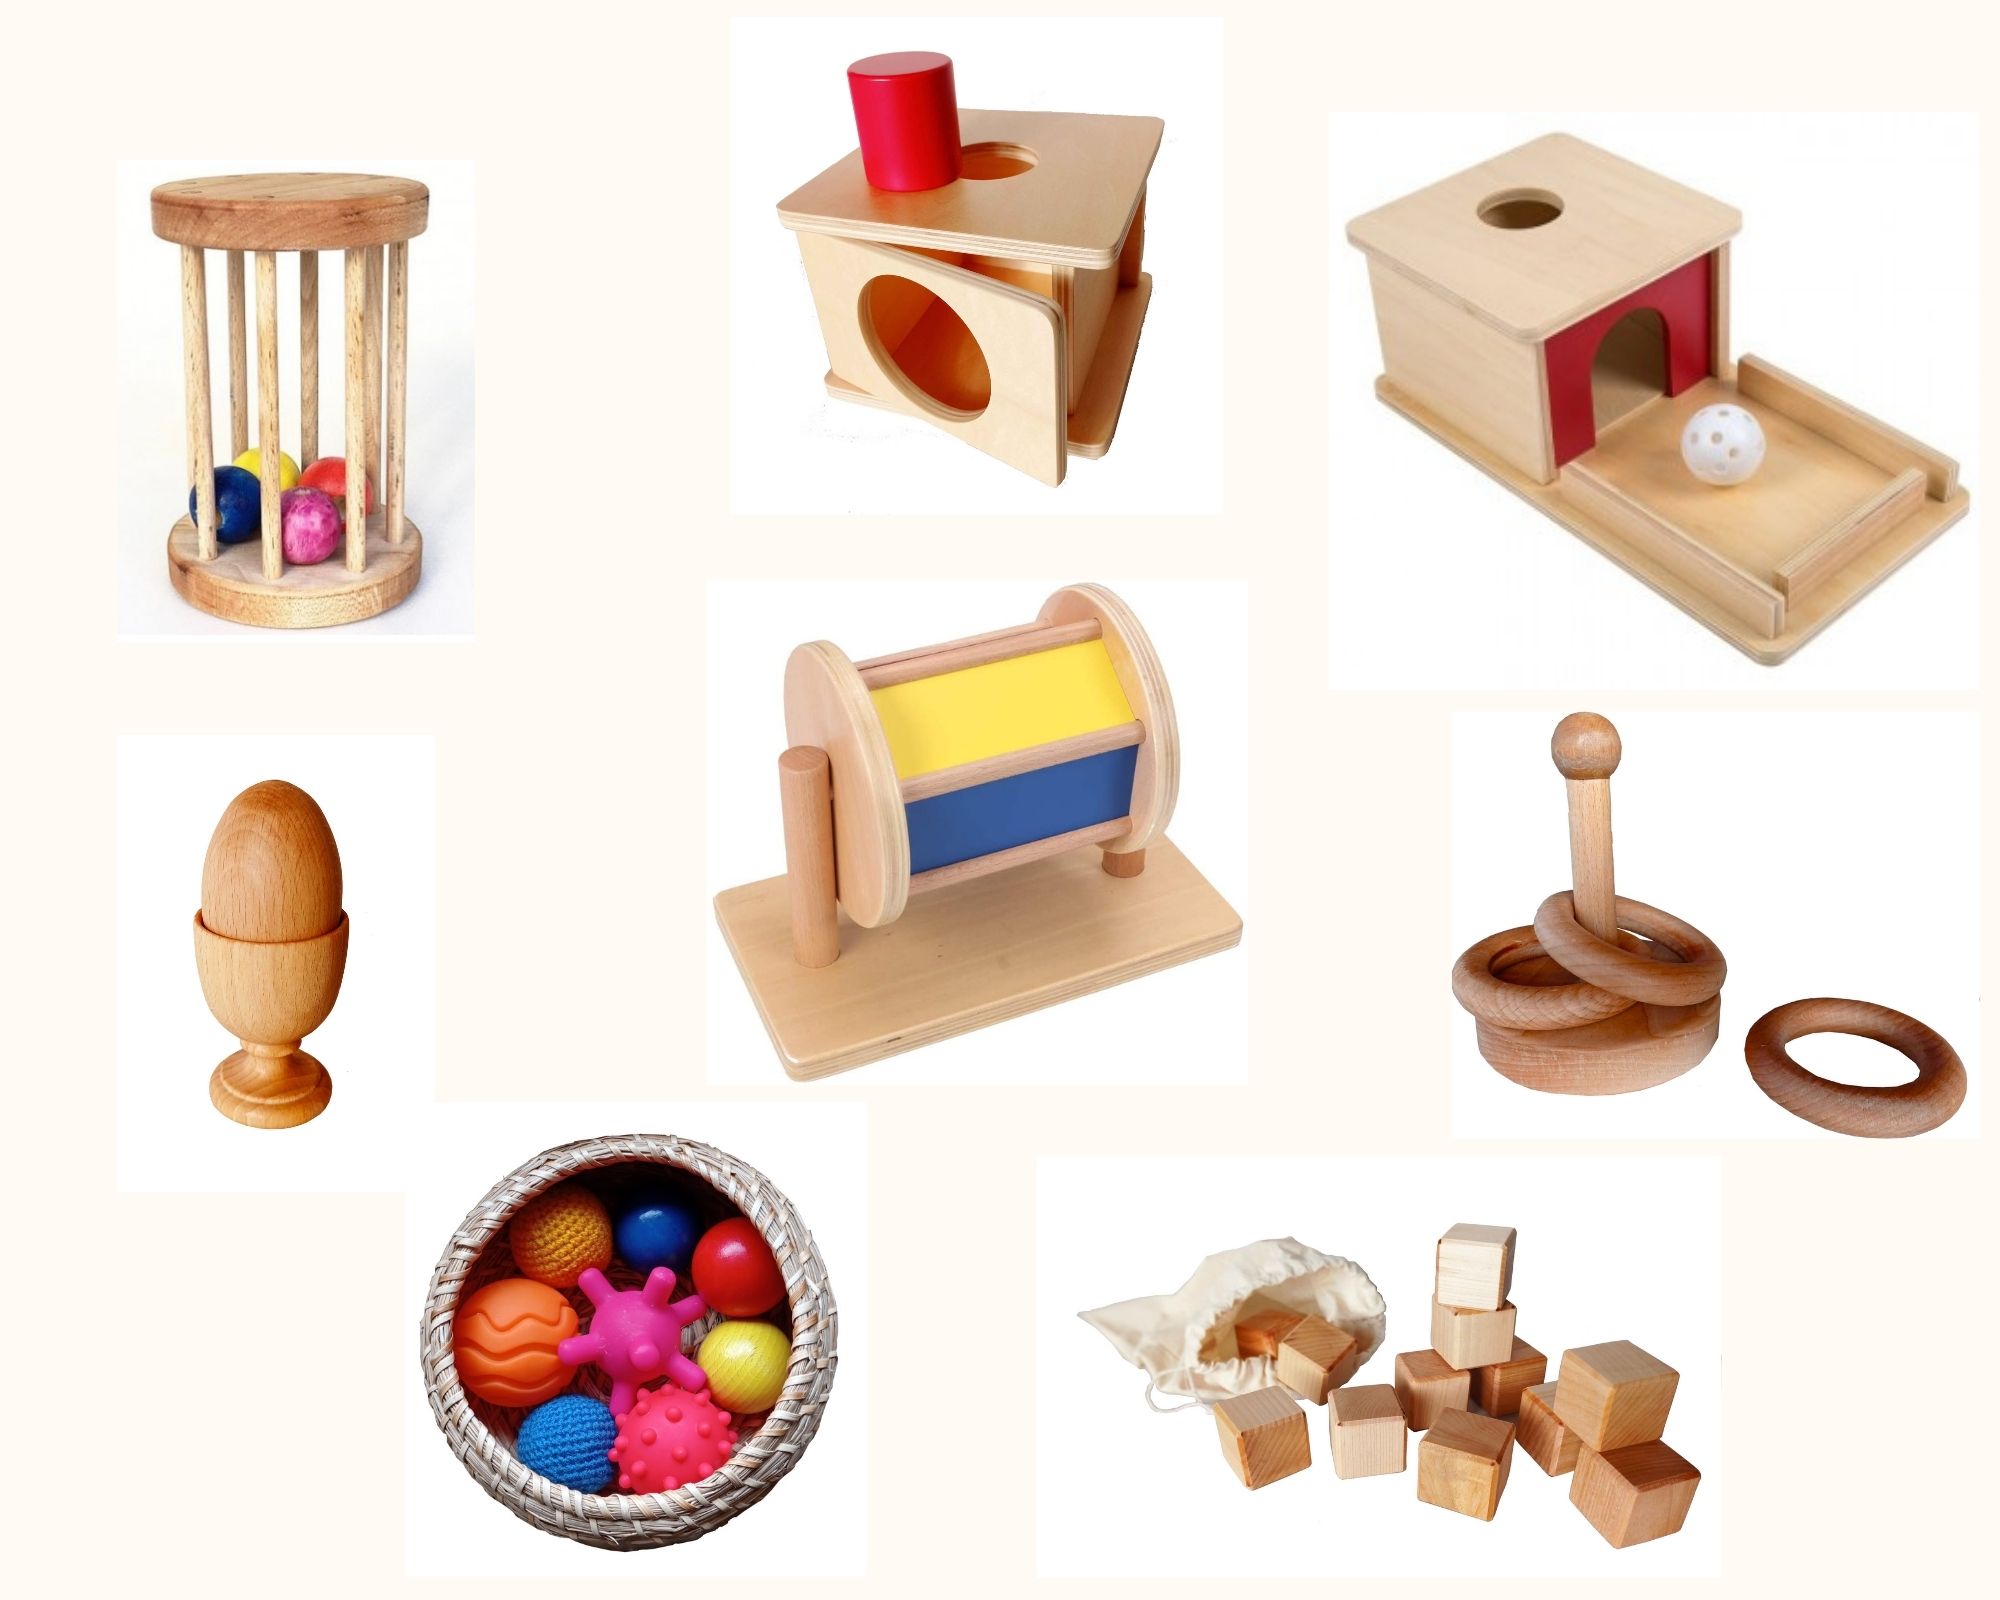 Le matériel Montessori pour les petits de moins de 3 ans